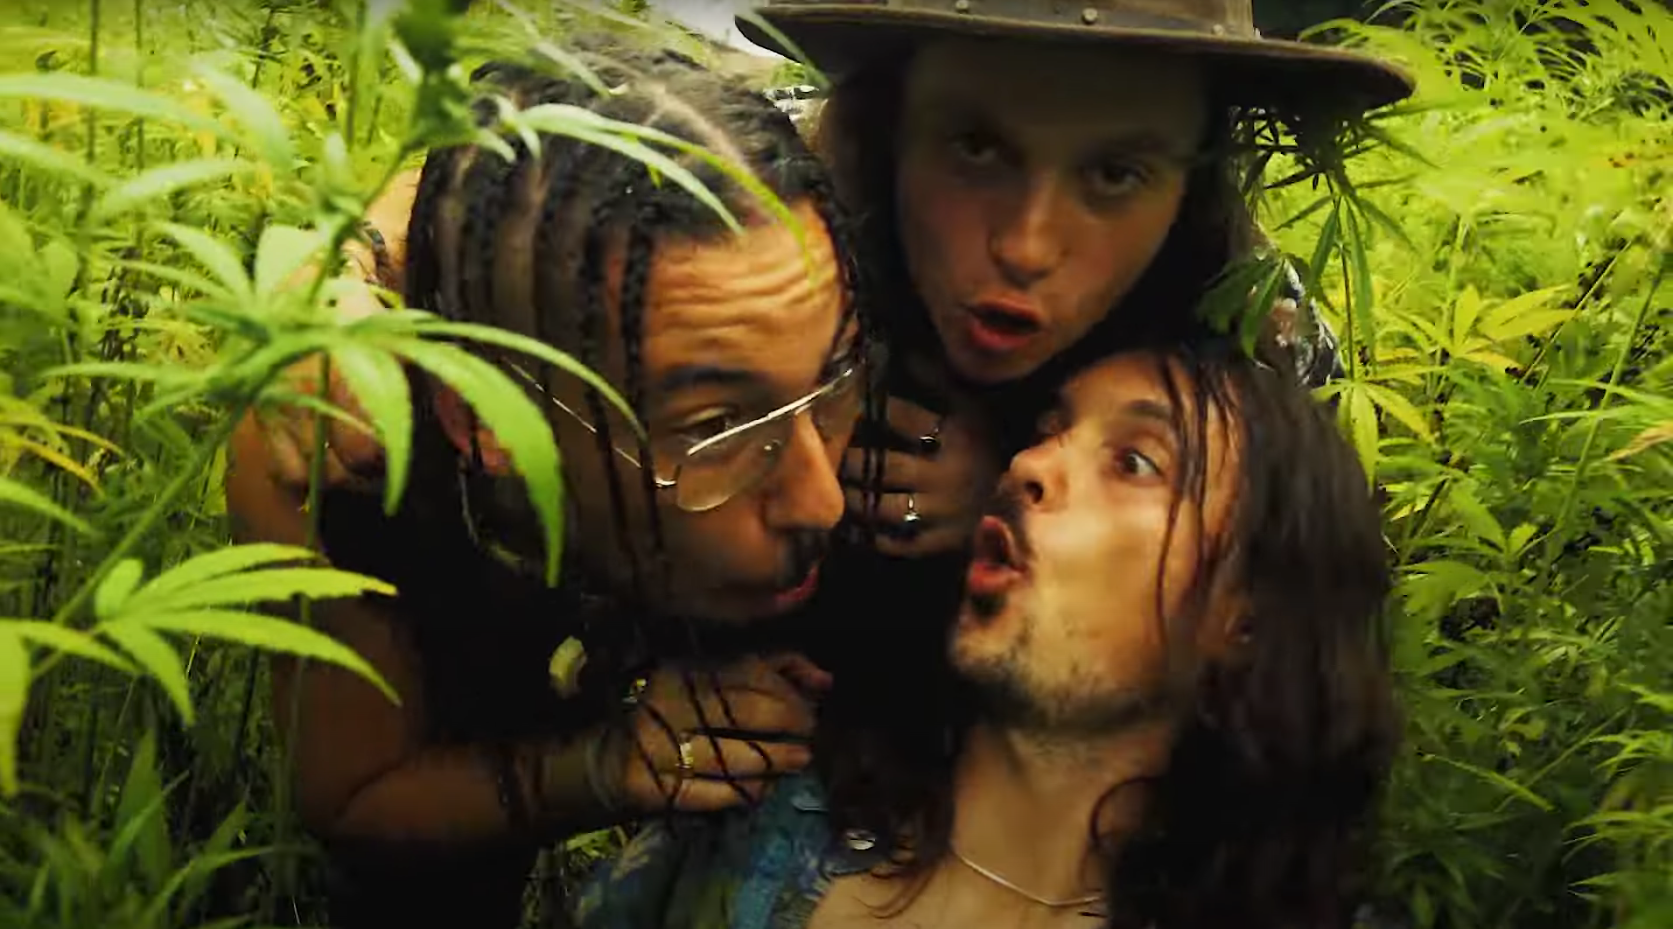 Foto del grupo Mota Blues donde se ven a tres chicos bastante hippies entre plantas de cáñamo